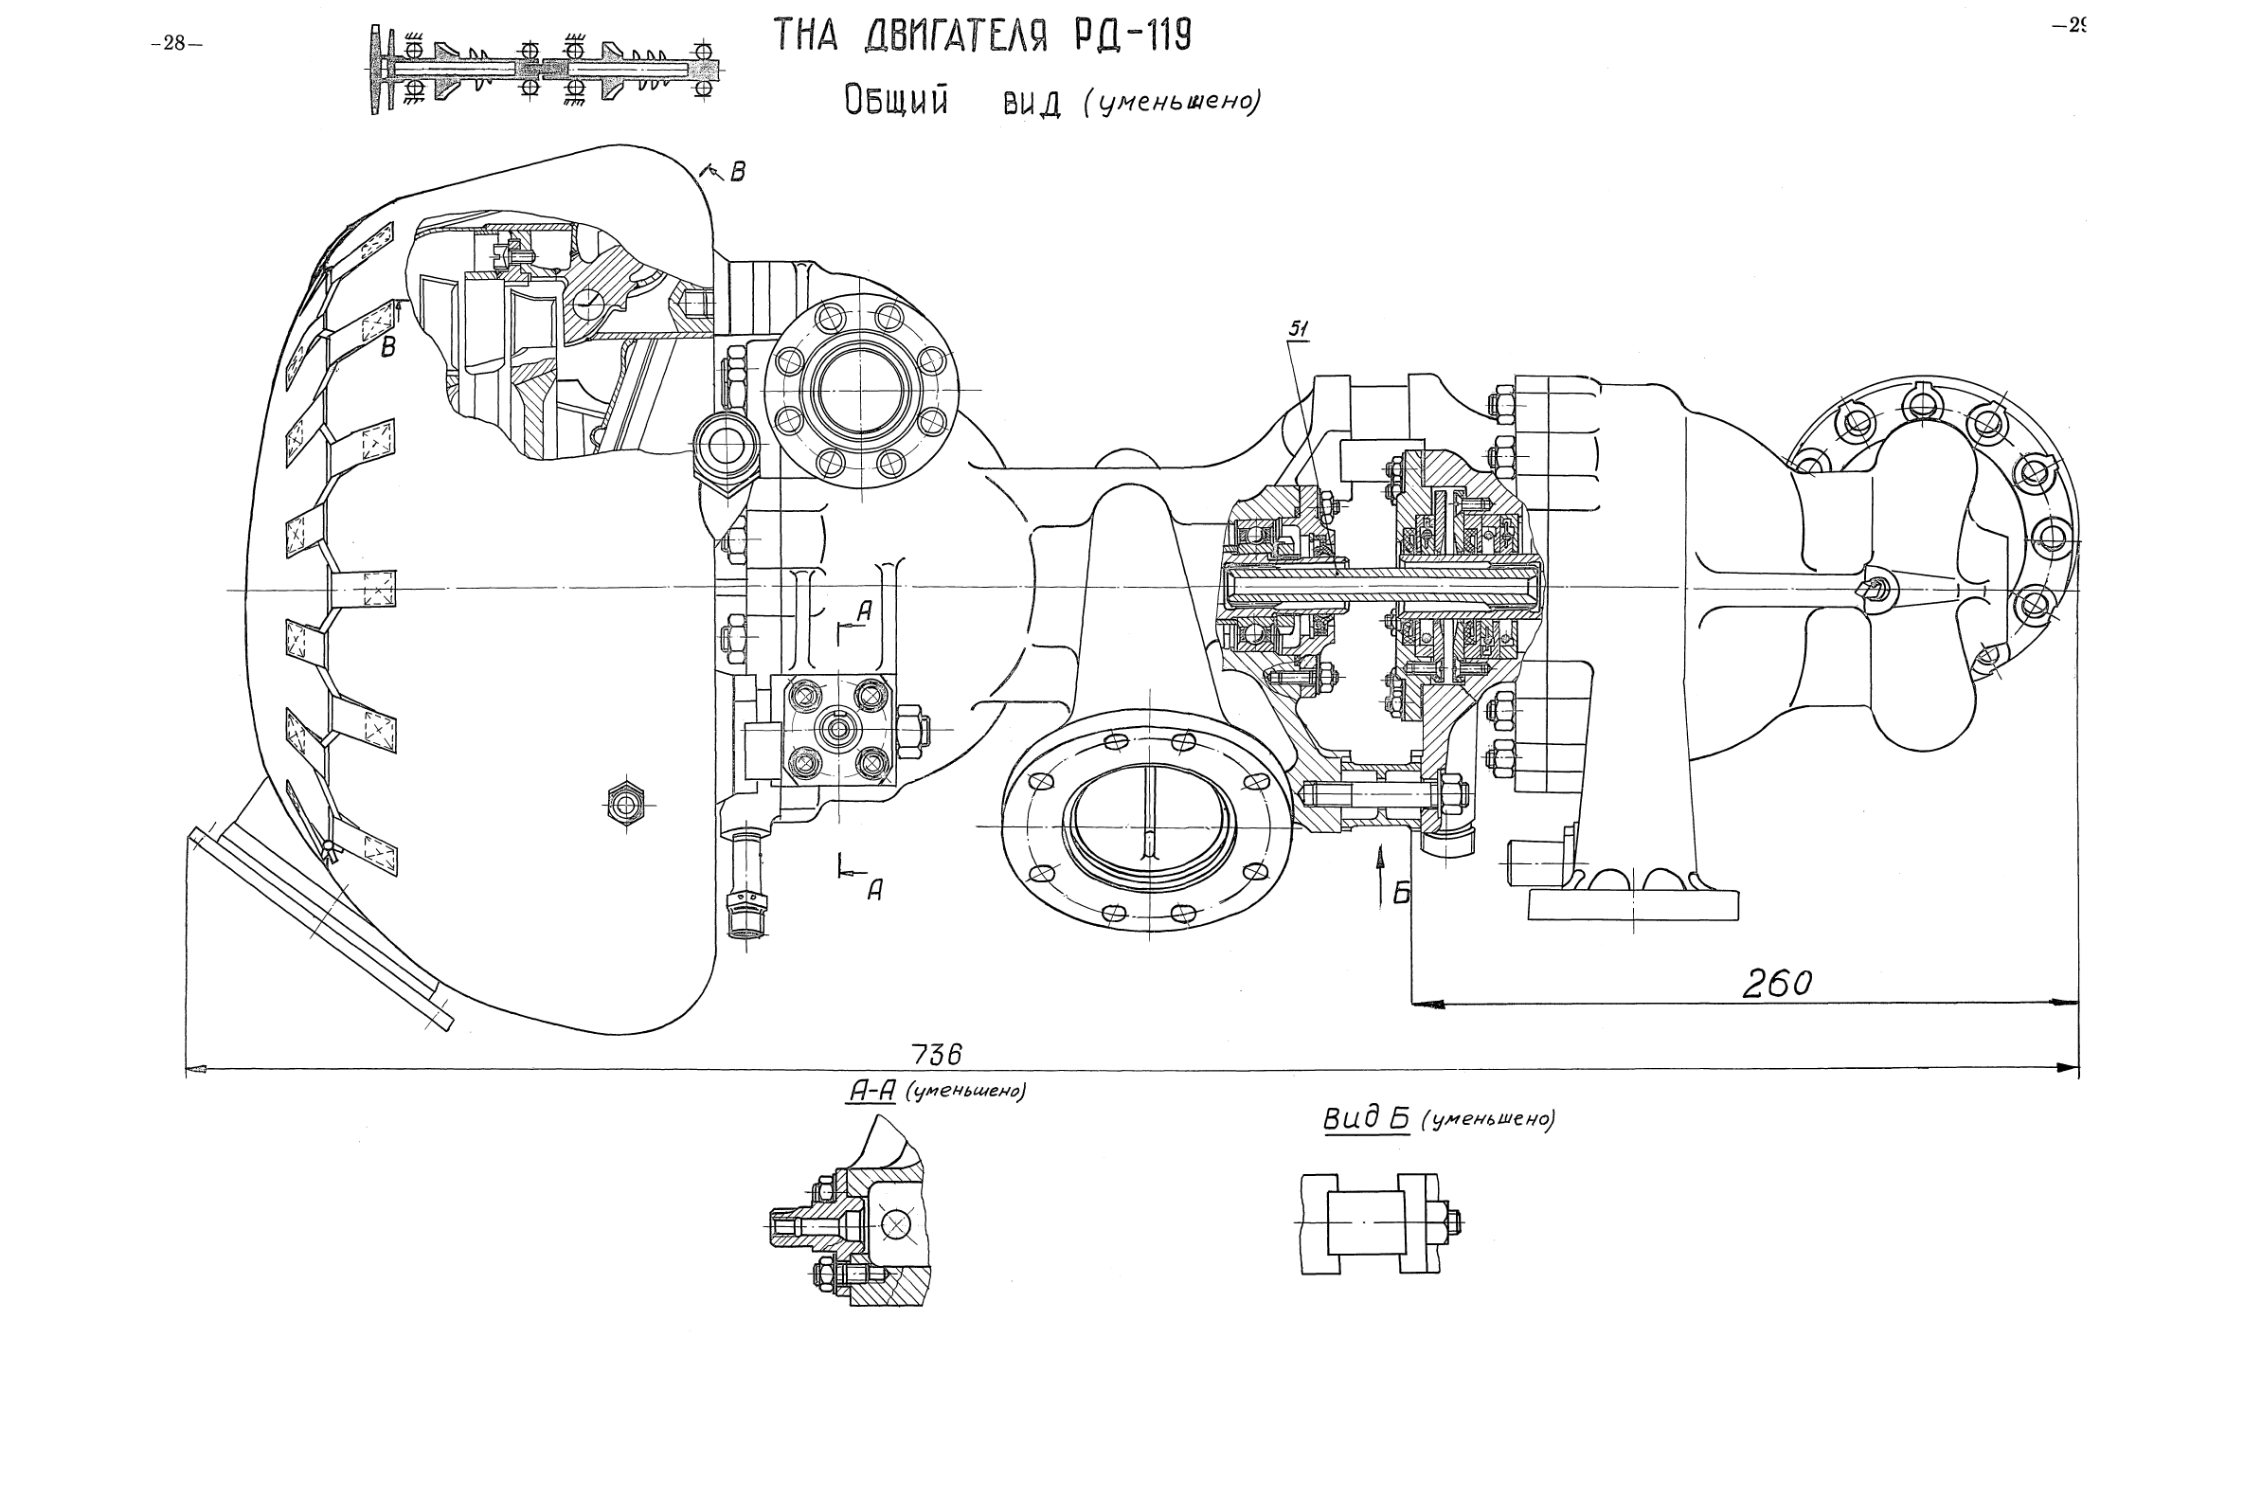 5. ТНА двигателя РД-119